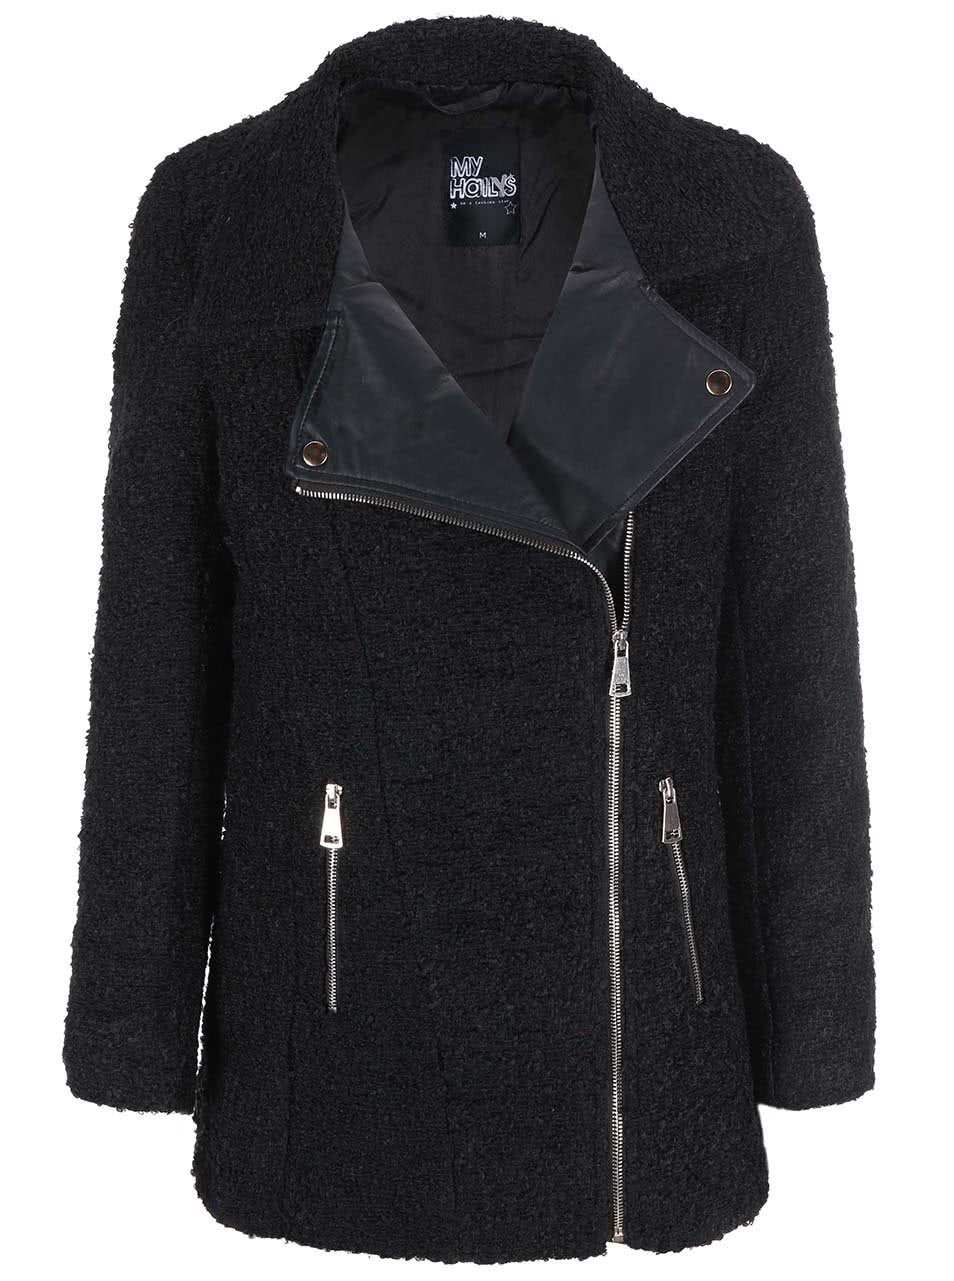 Černý kabát s koženkovými detaily Haily´s Teva